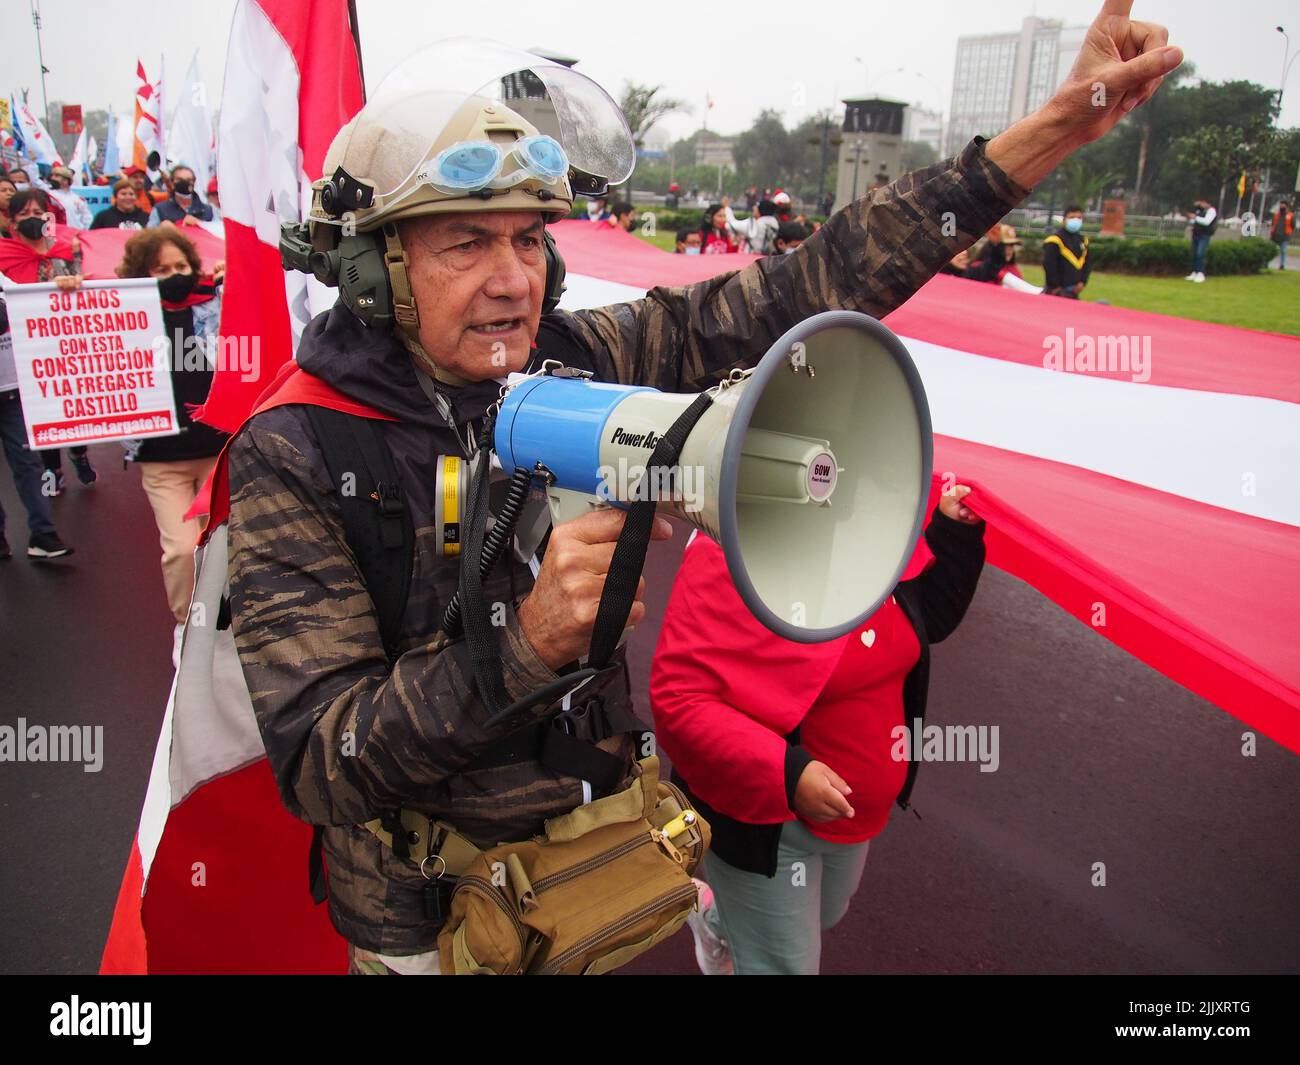 Gigante bandera peruana llevada por manifestantes cuando en el día de la independencia de Perú, cientos de personas se reúnen en las calles para protestar contra el presidente Pedro Castillo, acusado de varios actos de corrupción después del primer año de su gobierno. Foto de stock